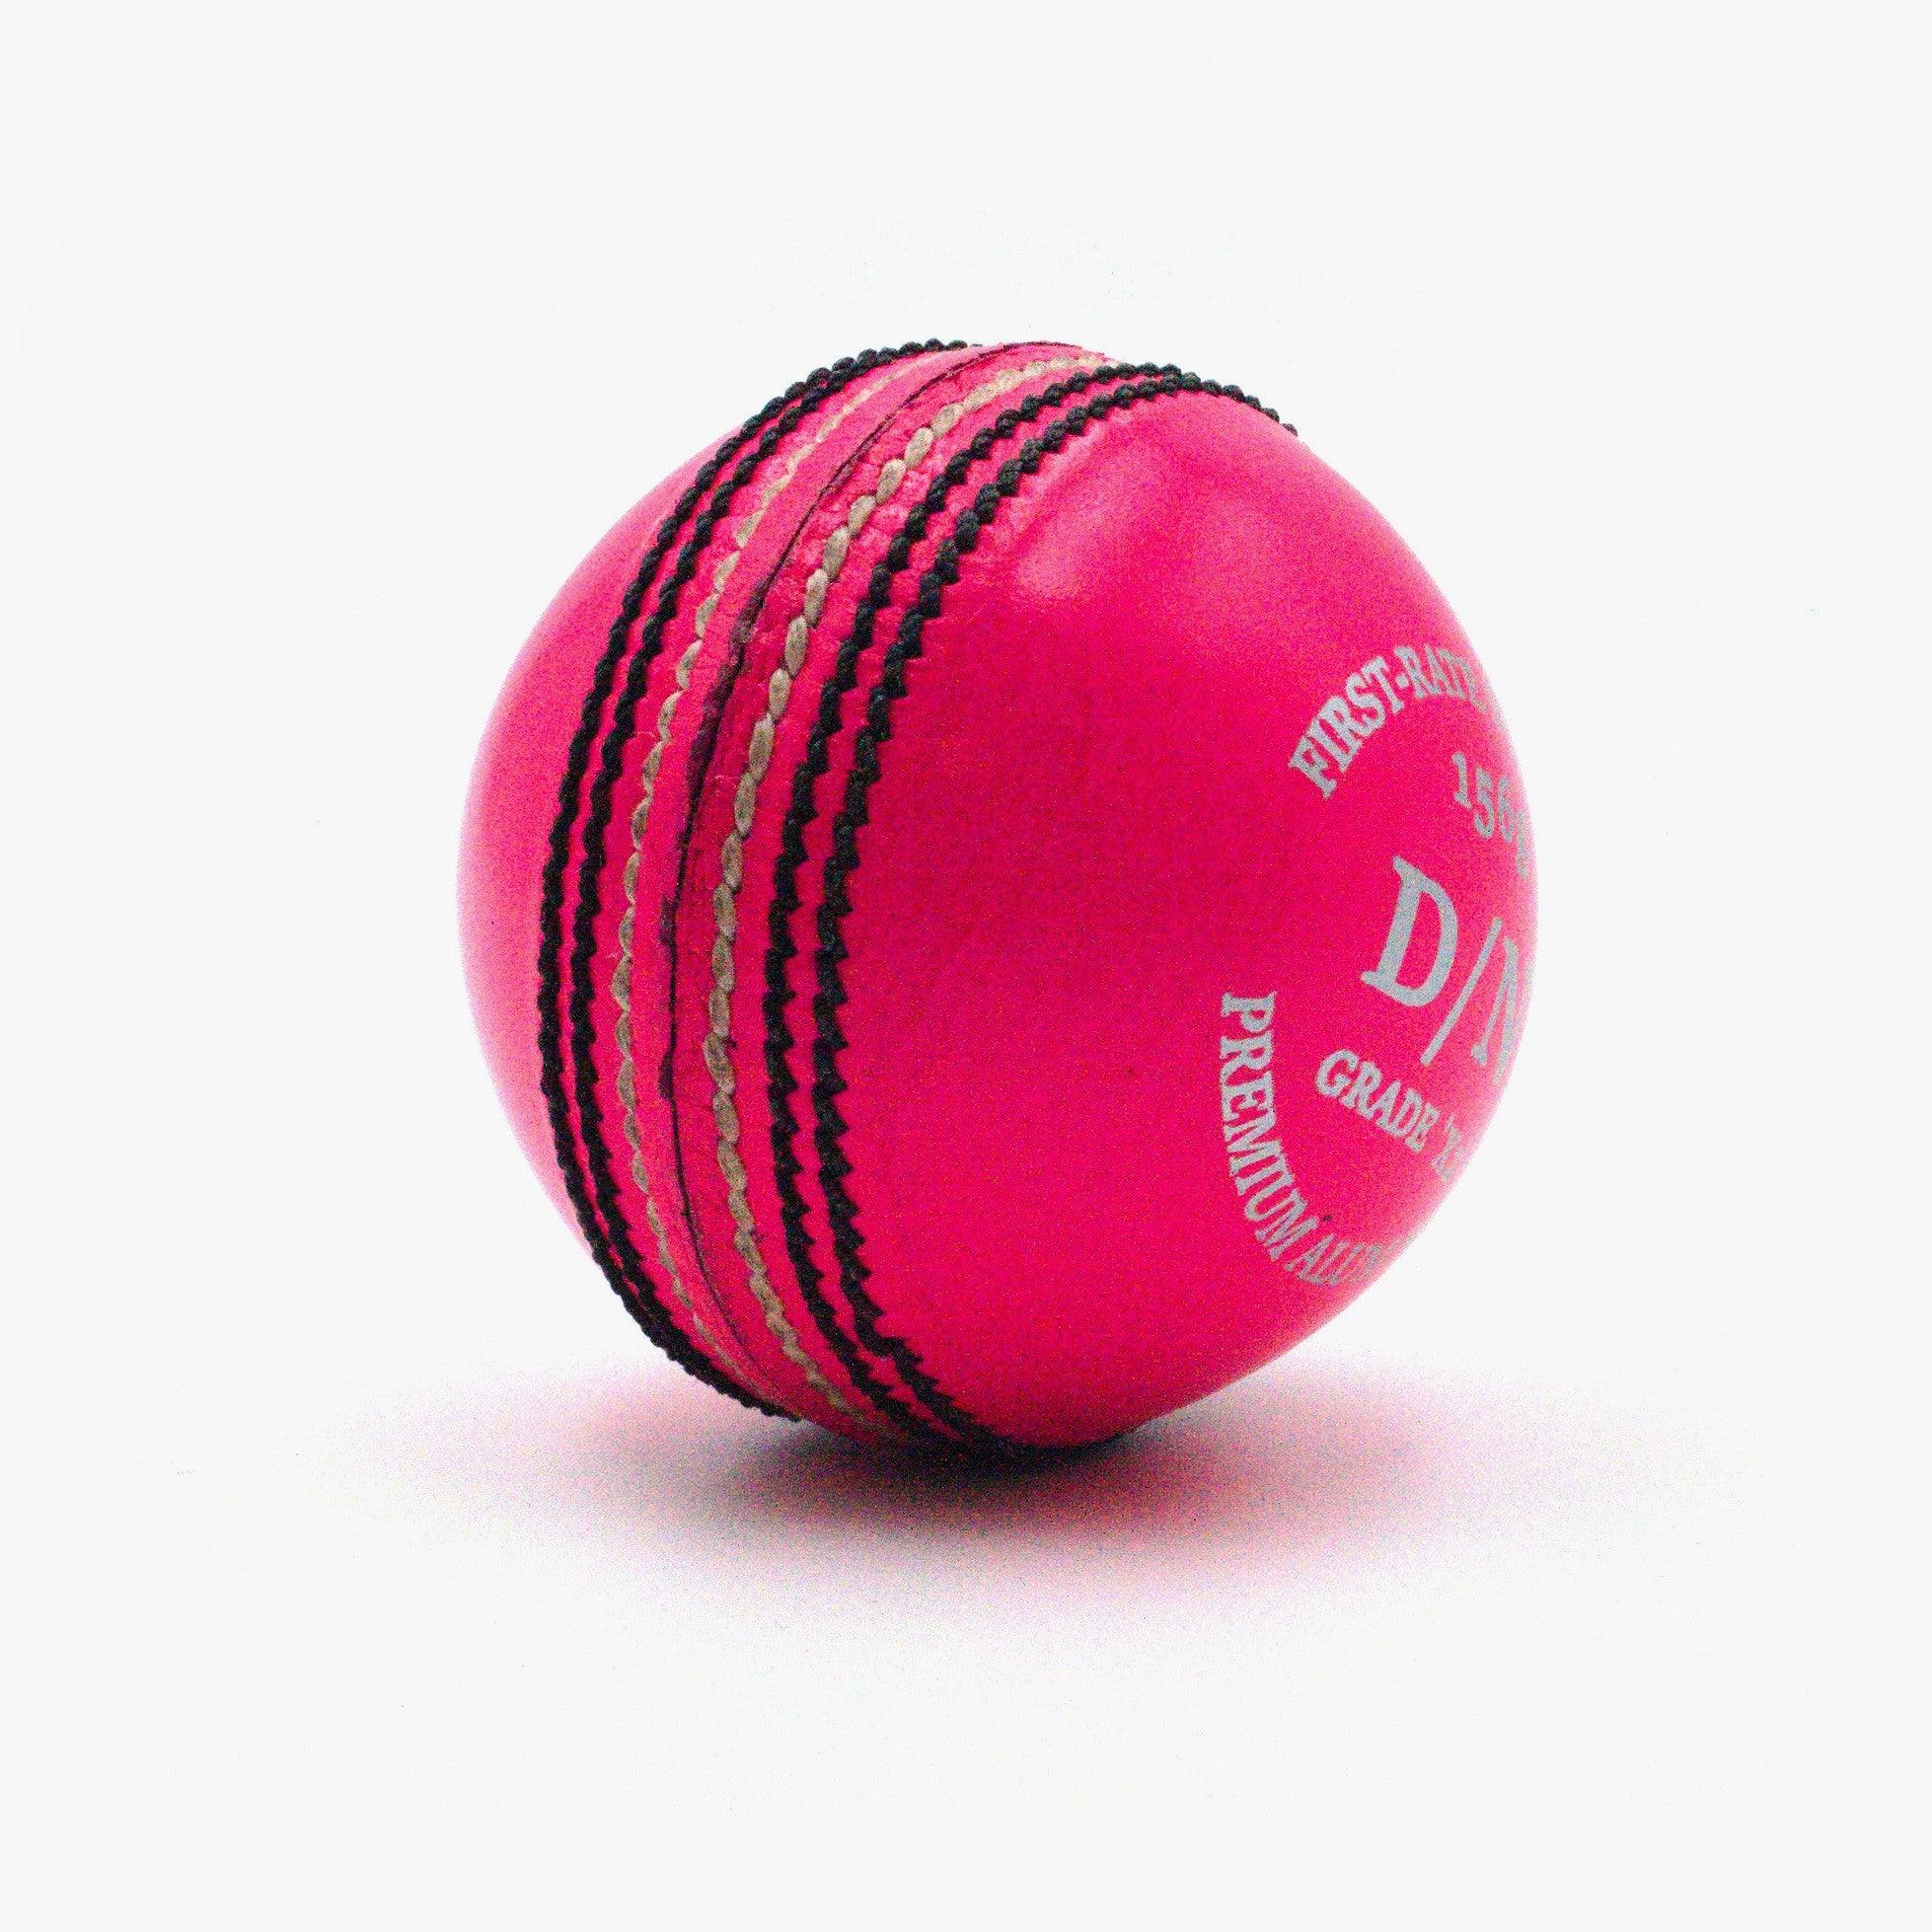 AT D/N 2pce PINK 156g Cricket Ball - AT Sports